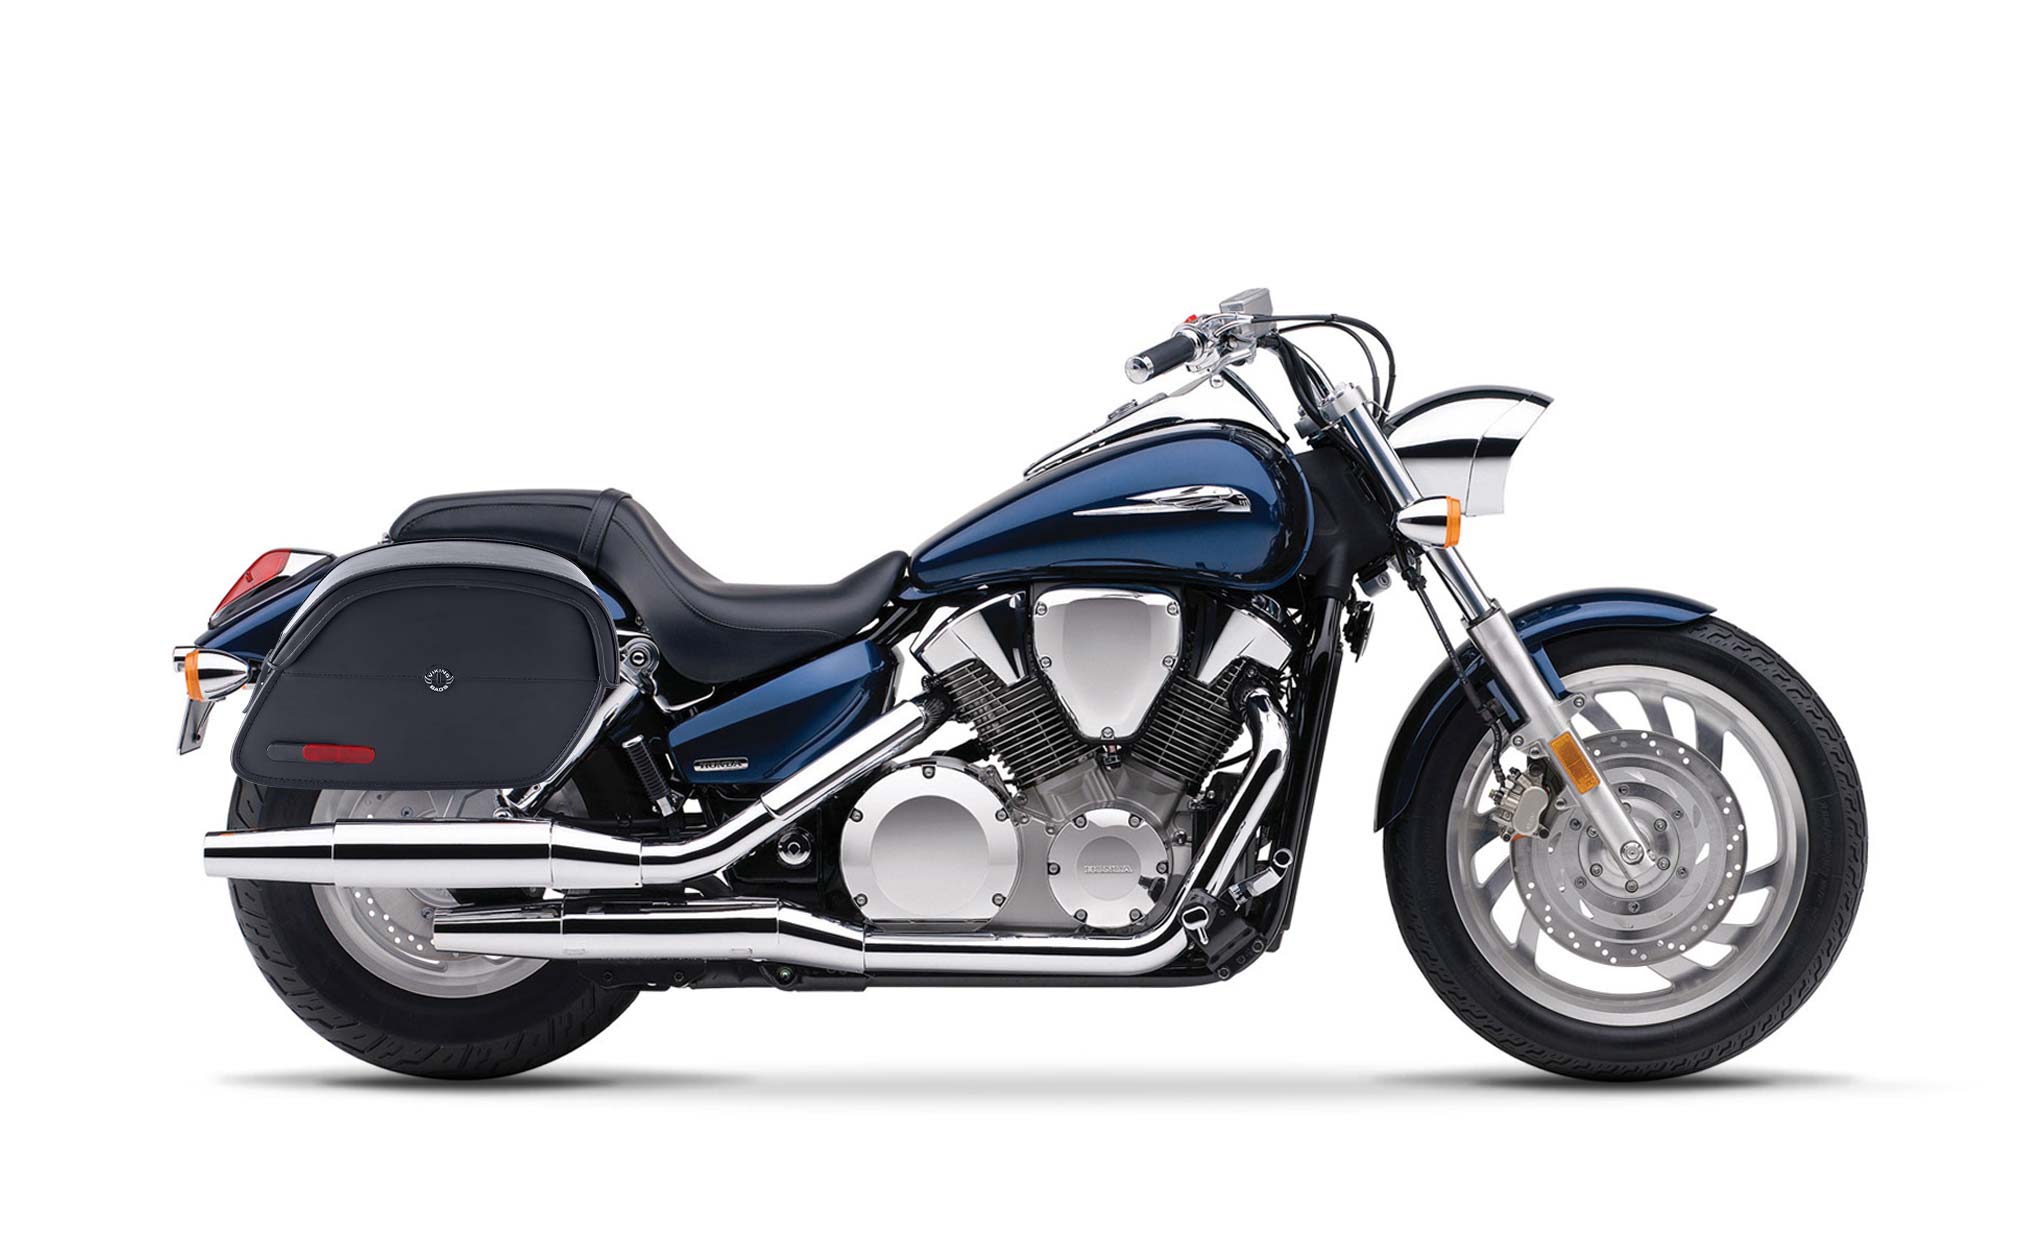 Viking California Large Honda Vtx 1300 C Leather Motorcycle Saddlebags on Bike Photo @expand